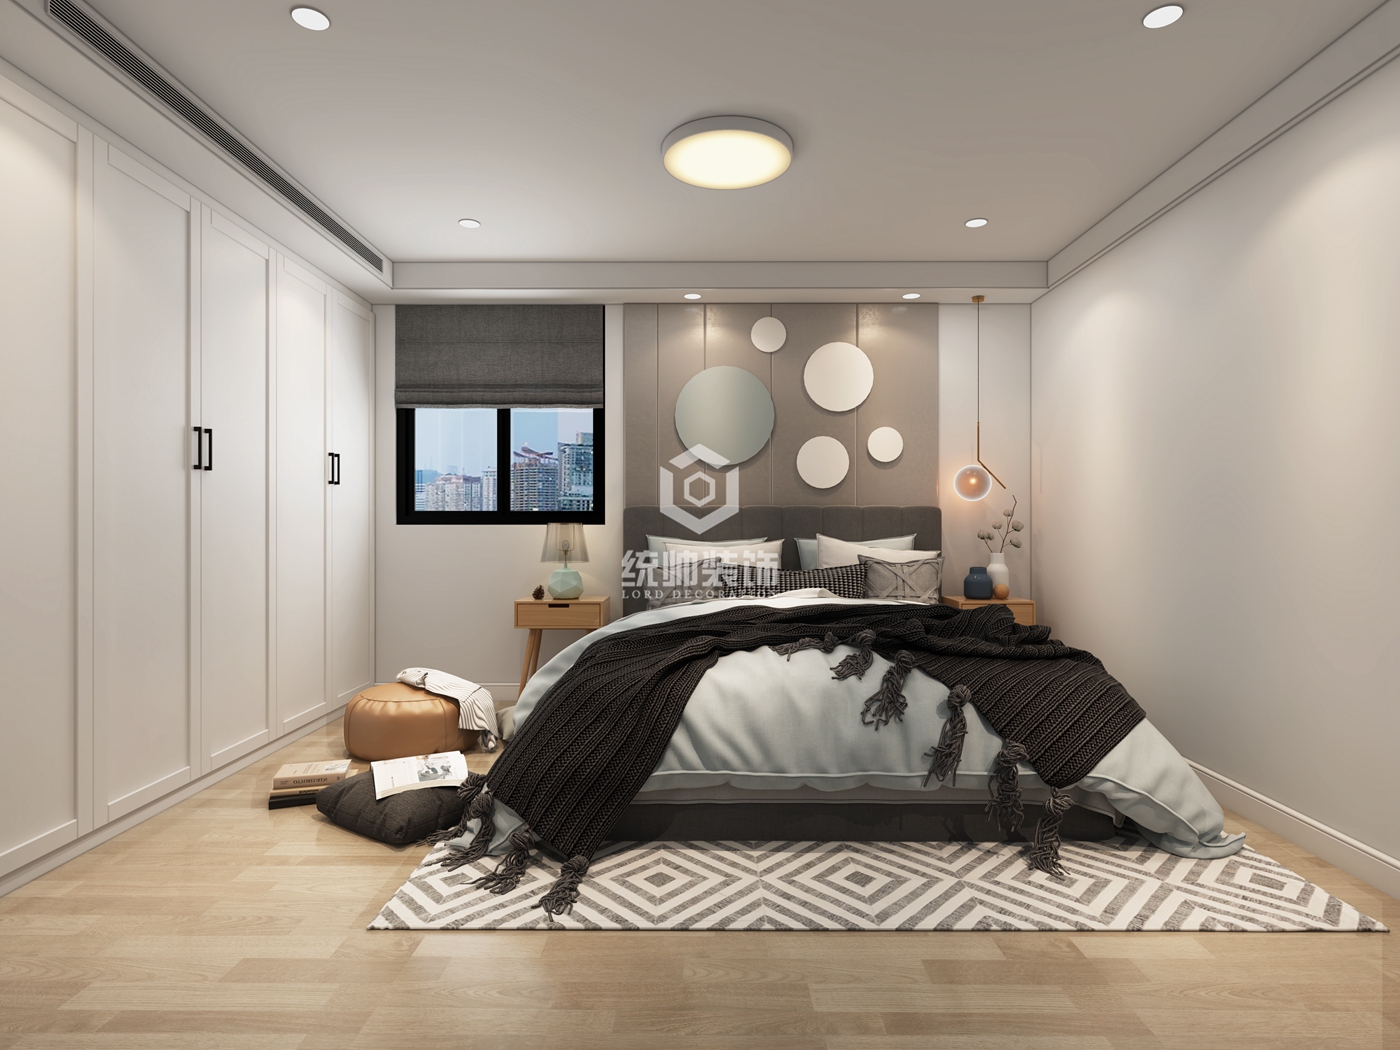 浦东新区望春都市家园110平方北欧风格平层卧室装修效果图